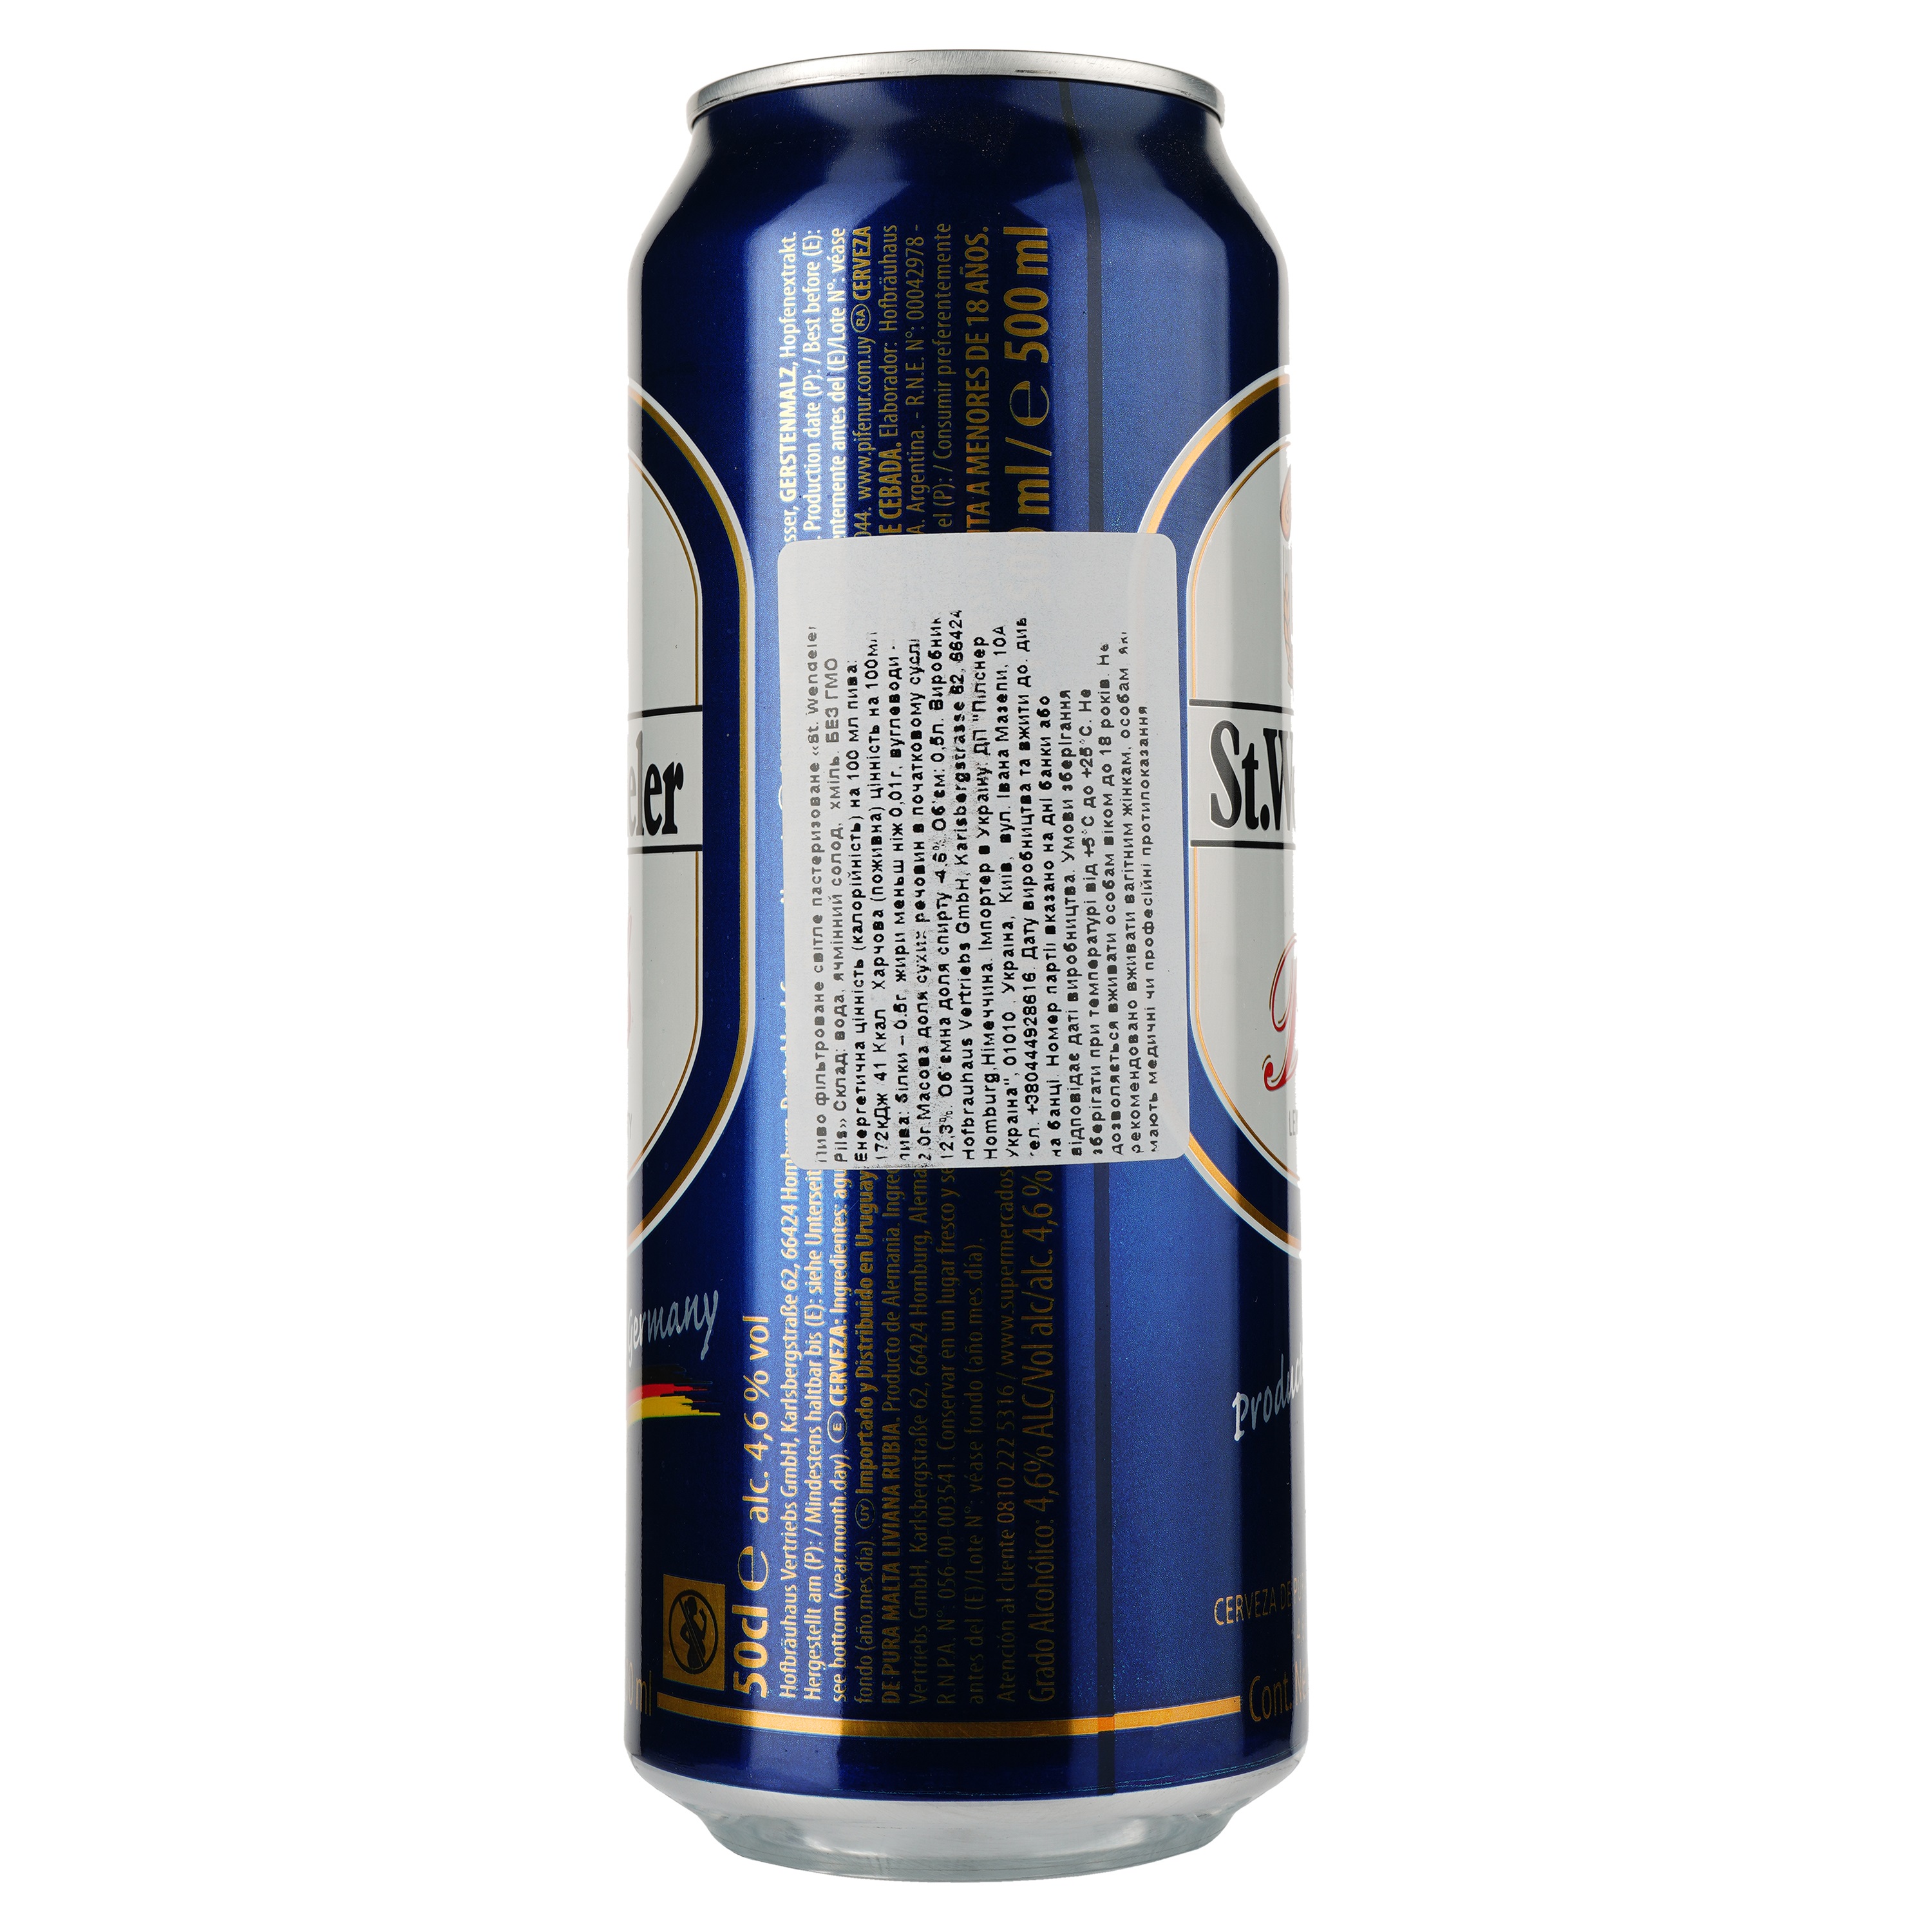 Пиво St.Wendeler Pils светлое, 4.6%, ж/б, 0.5 л - фото 3